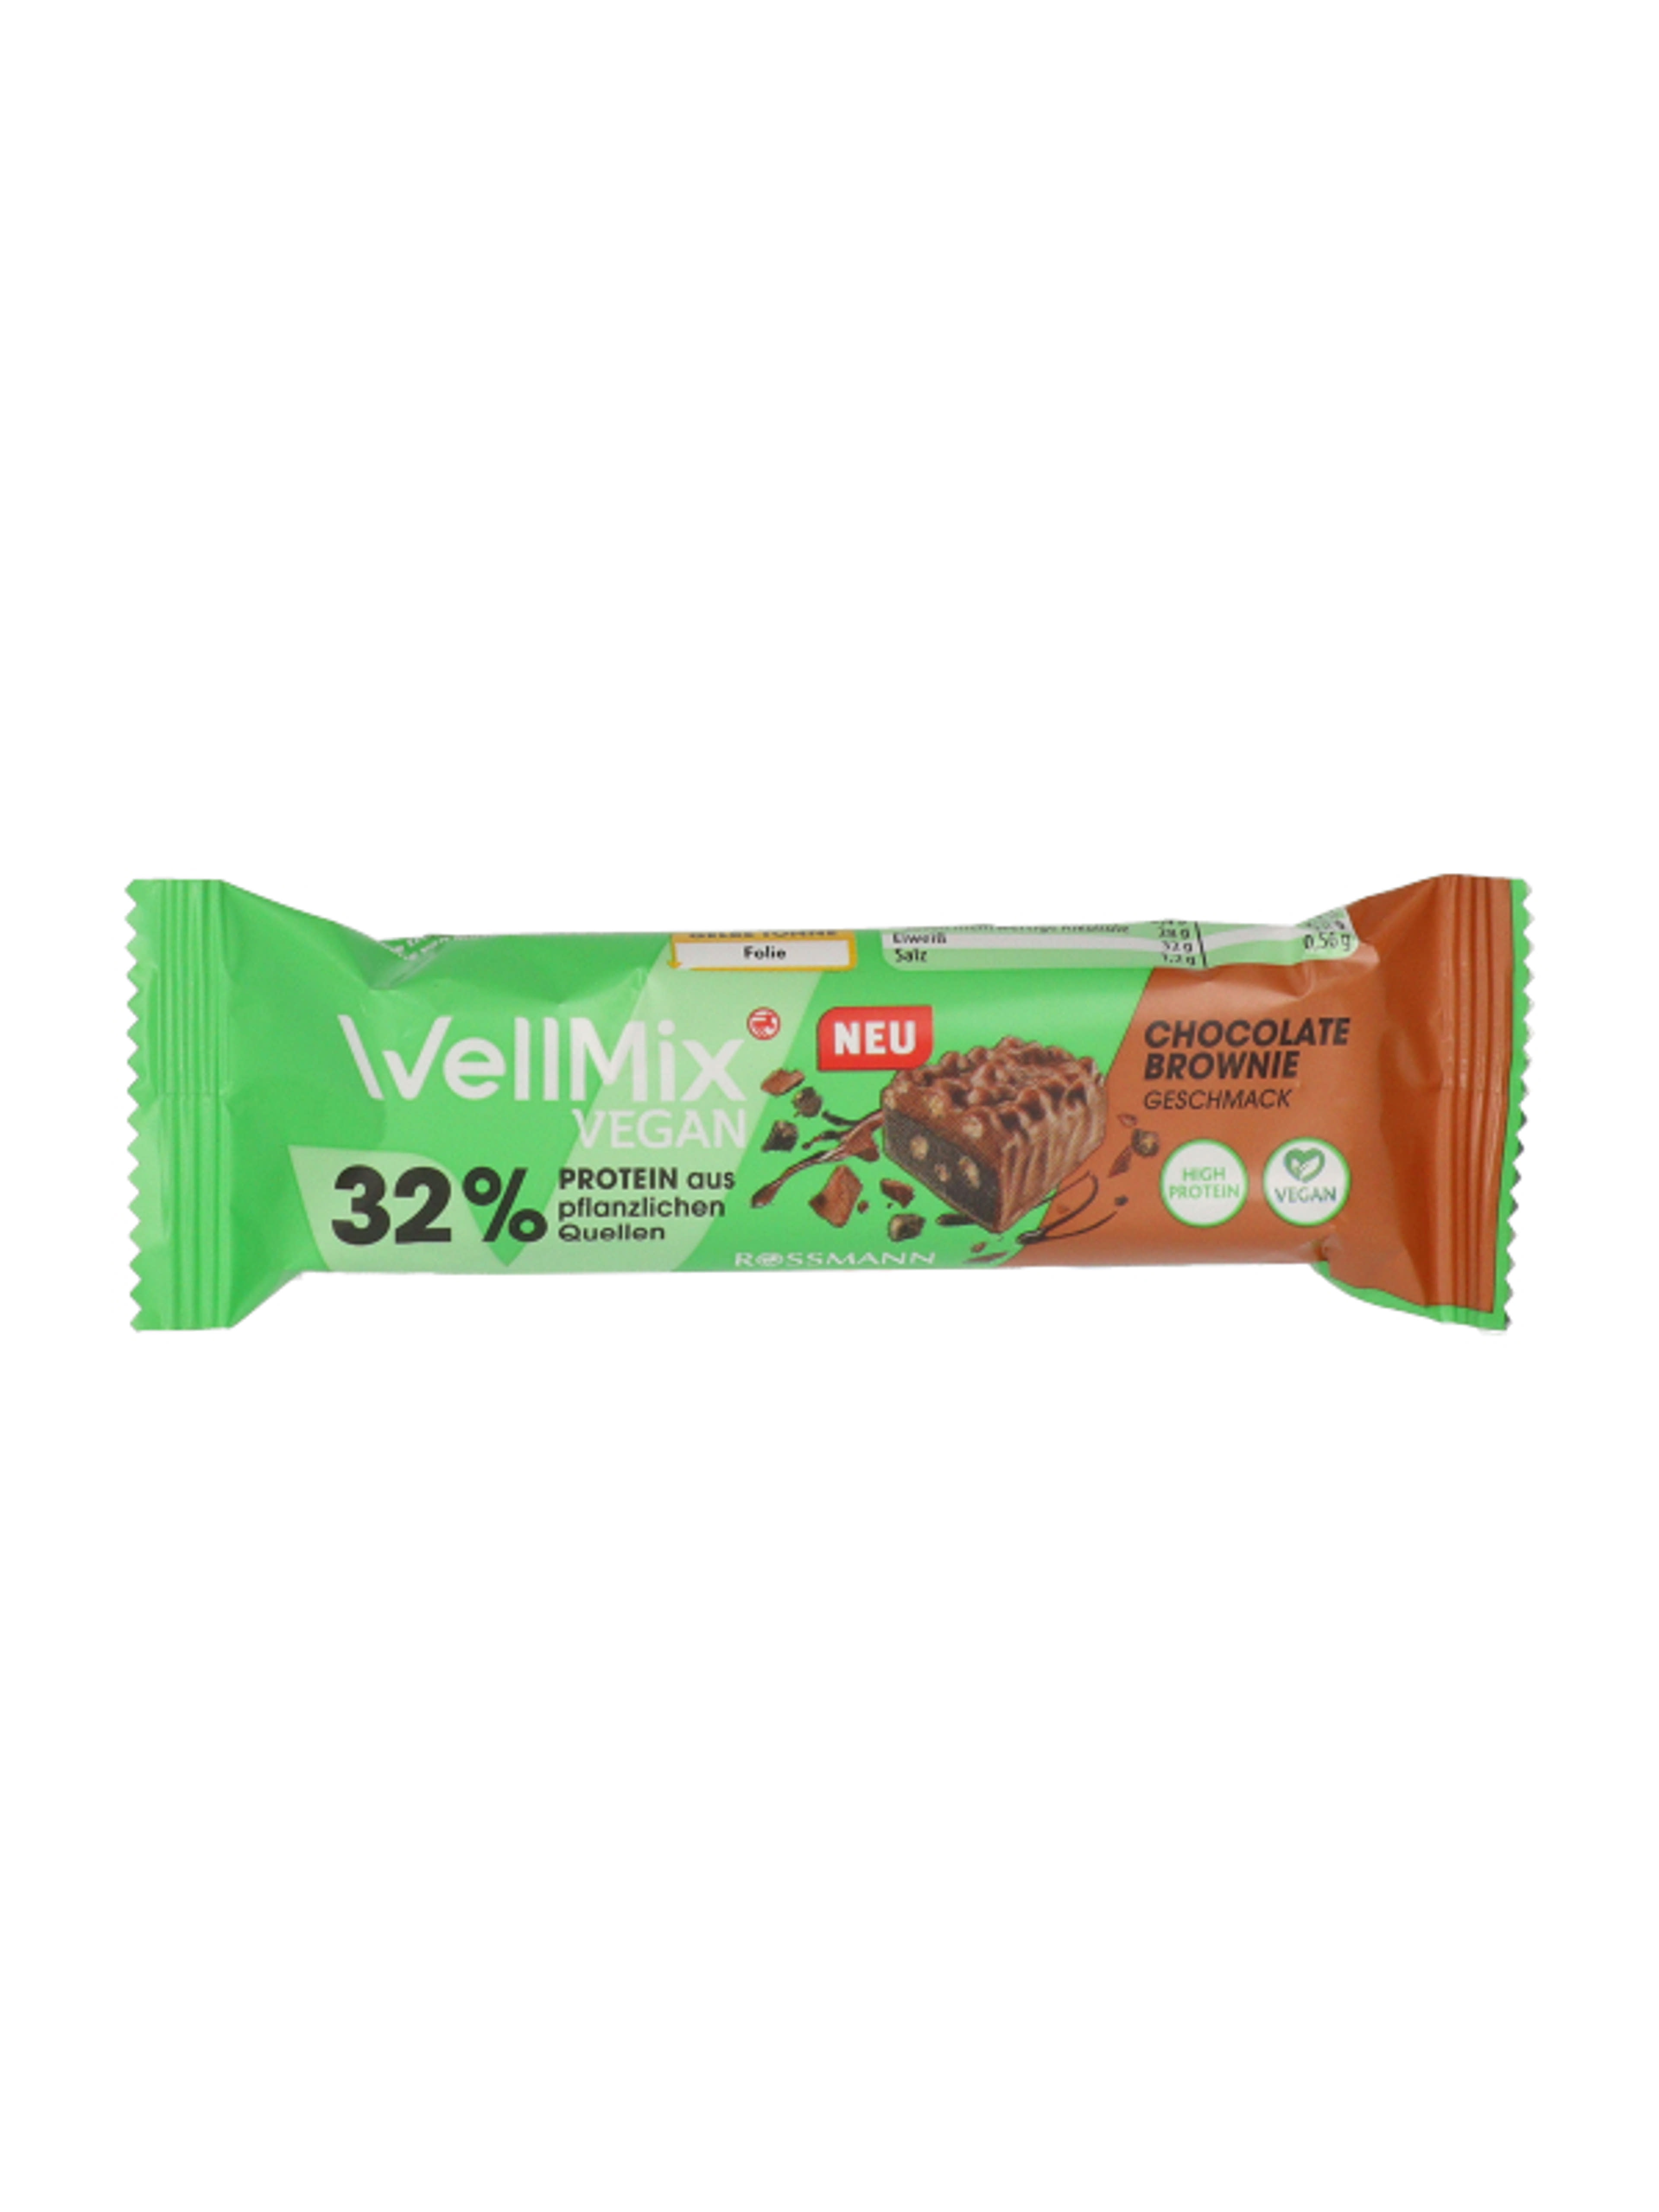 Well Mix 32% vegán protein szelet csokis brownie ízben - 45 g